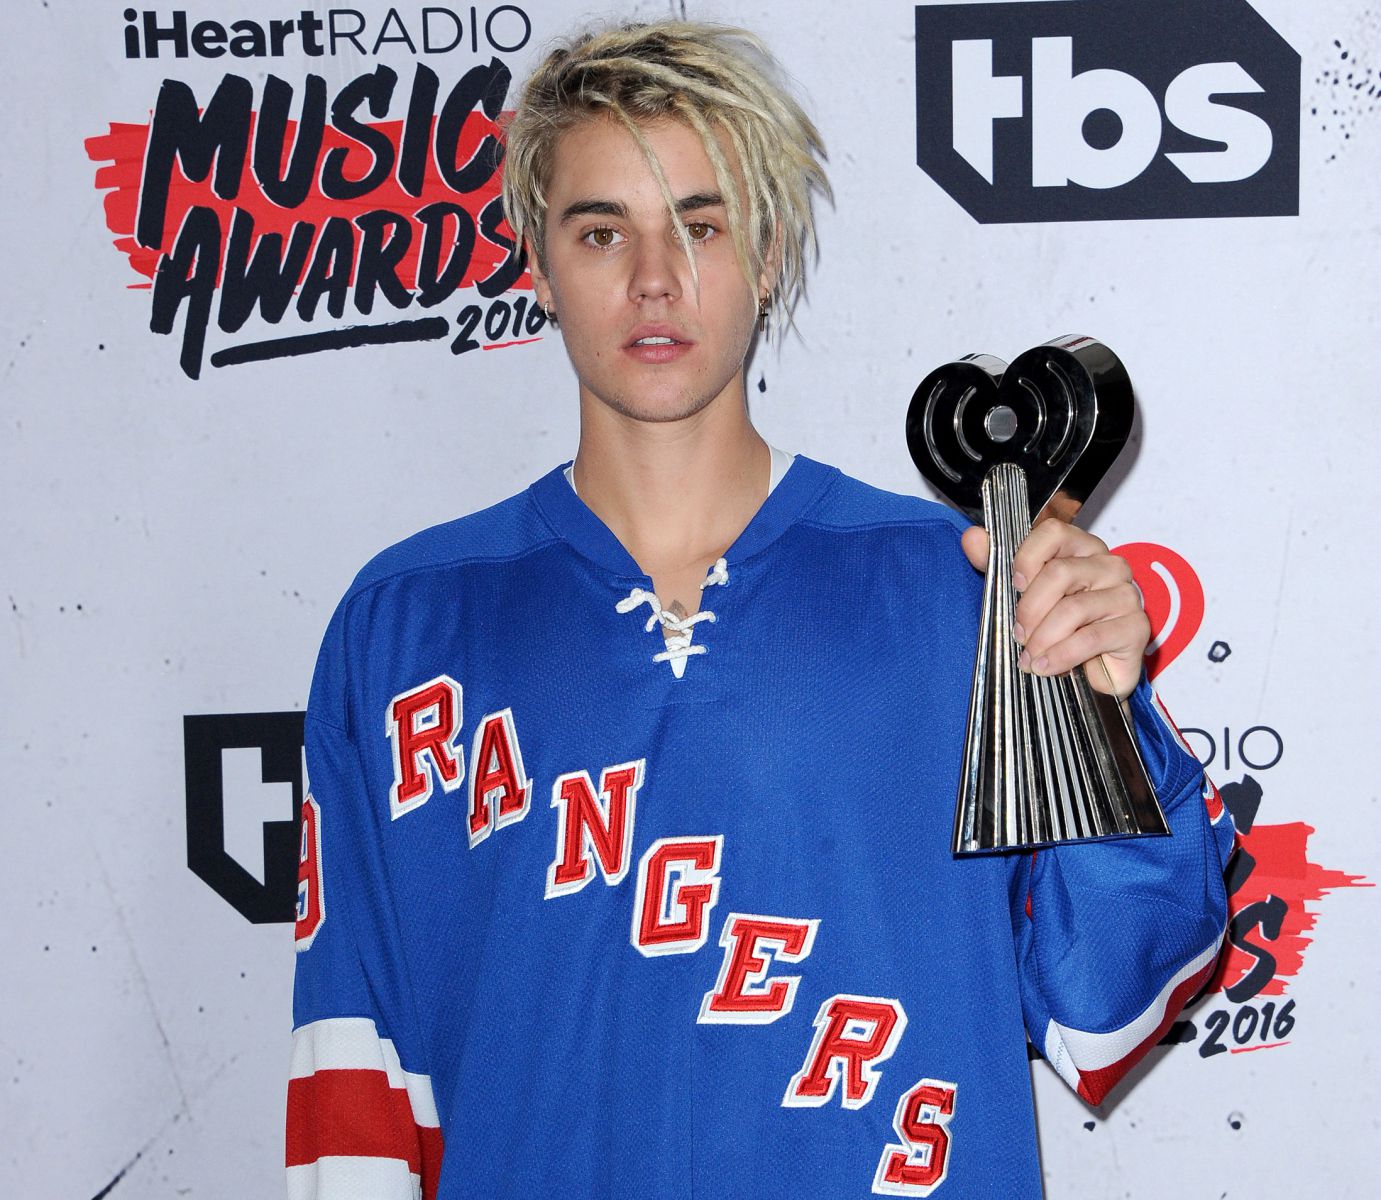 Justin Bieber em uma premiação de música segurando seu prêmio 